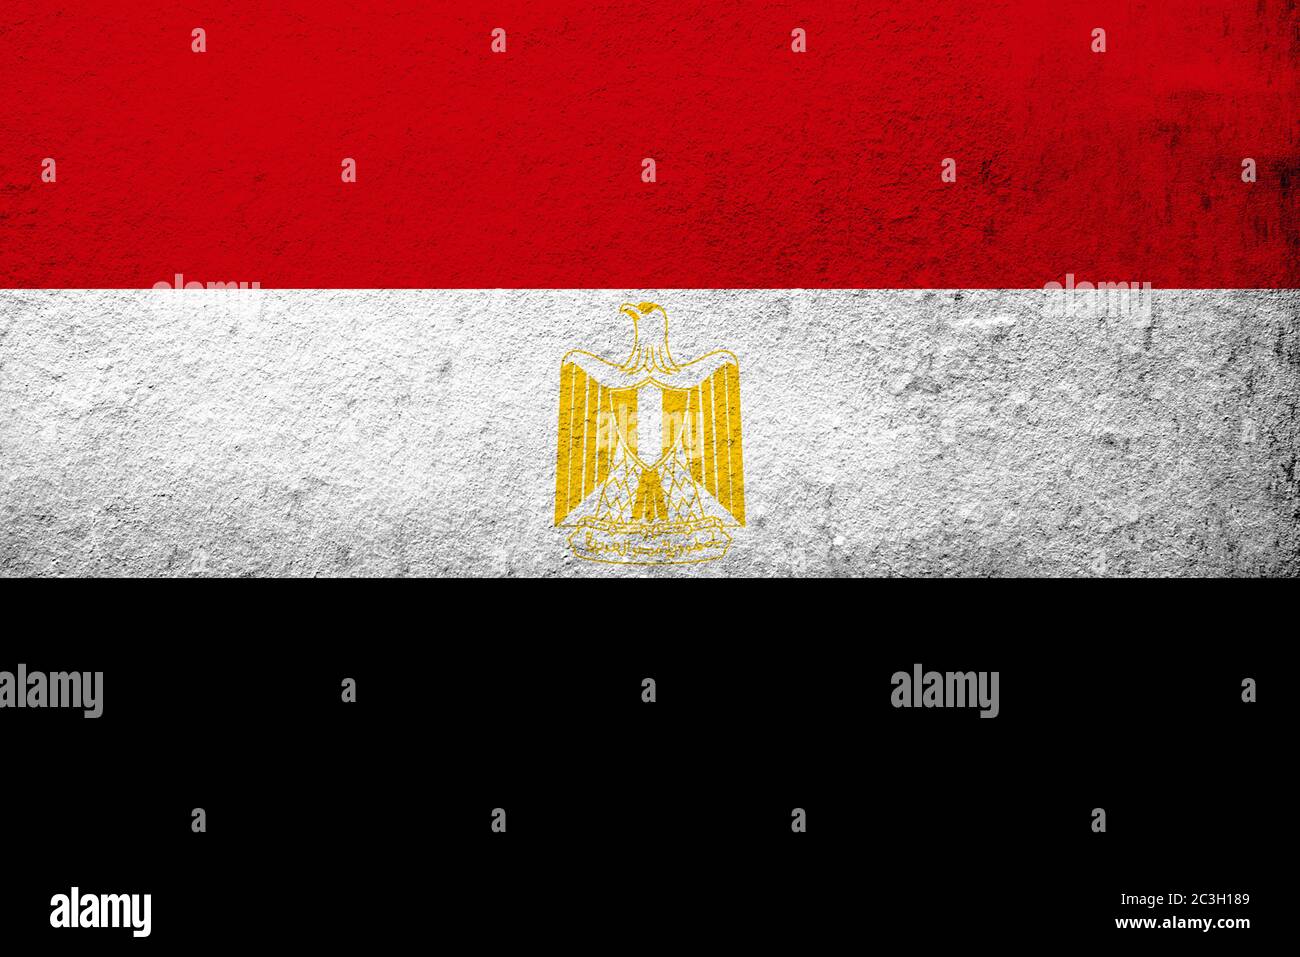 The Arab Republic of Egypt National flag. Grunge background Stock Photo